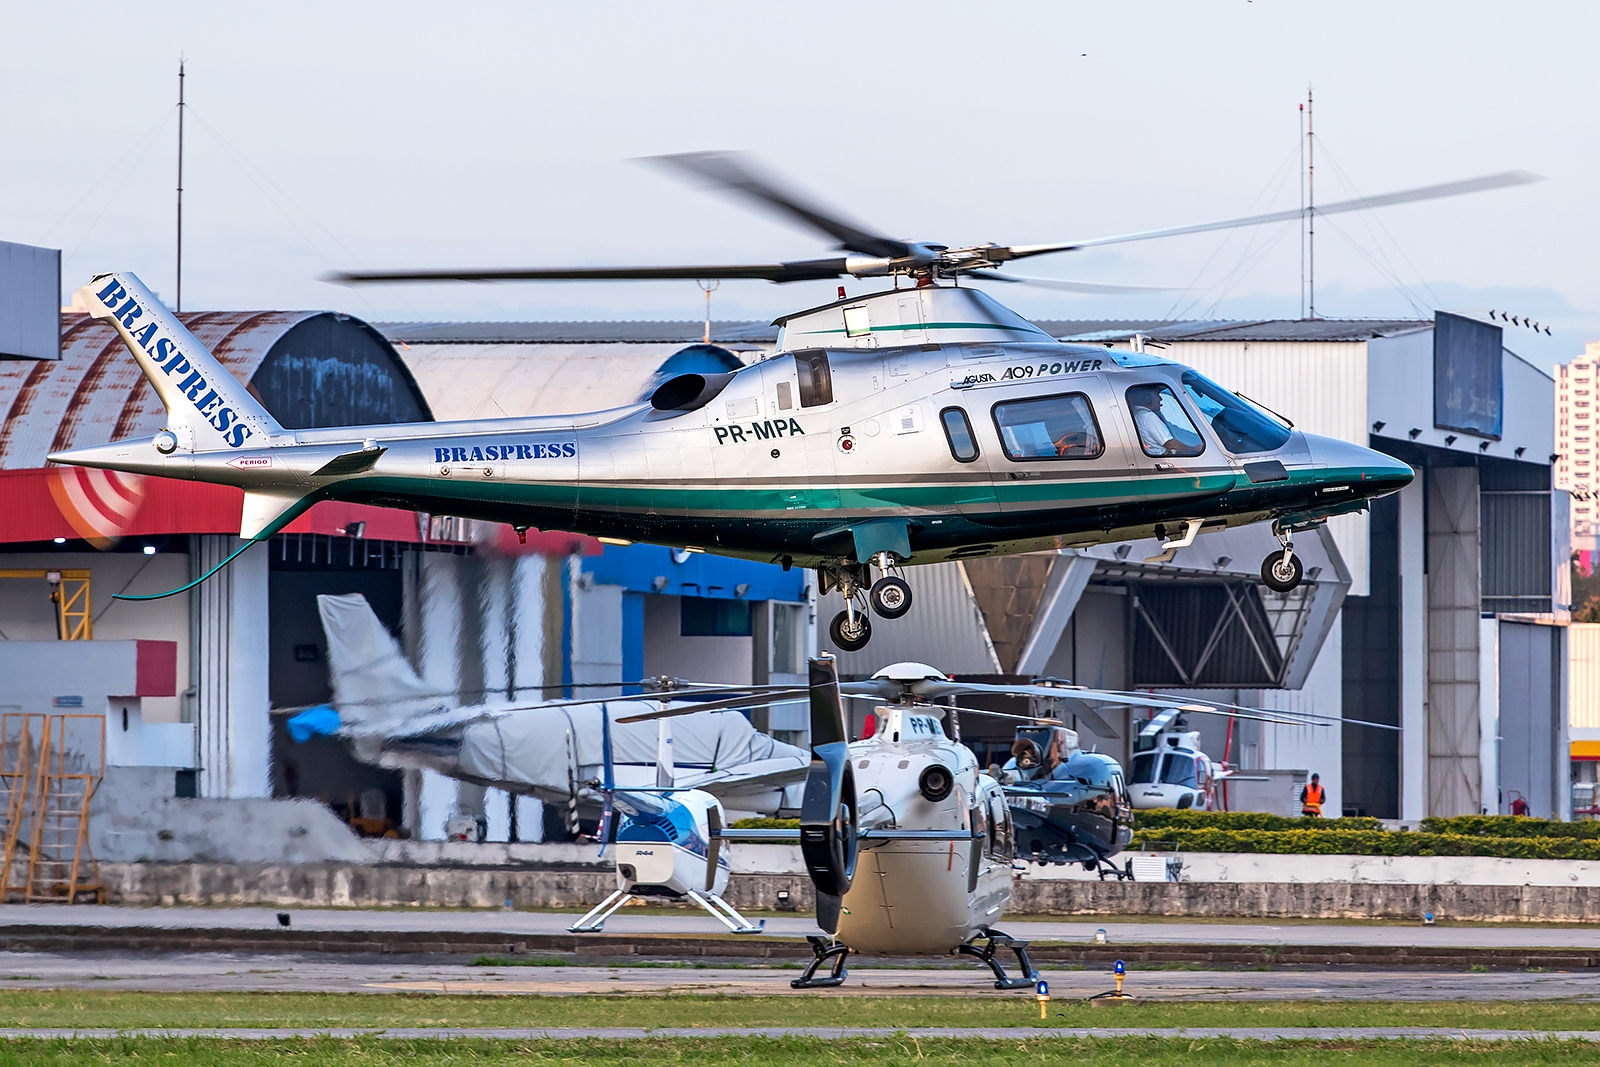 PR-MBA - Agusta A109 Power